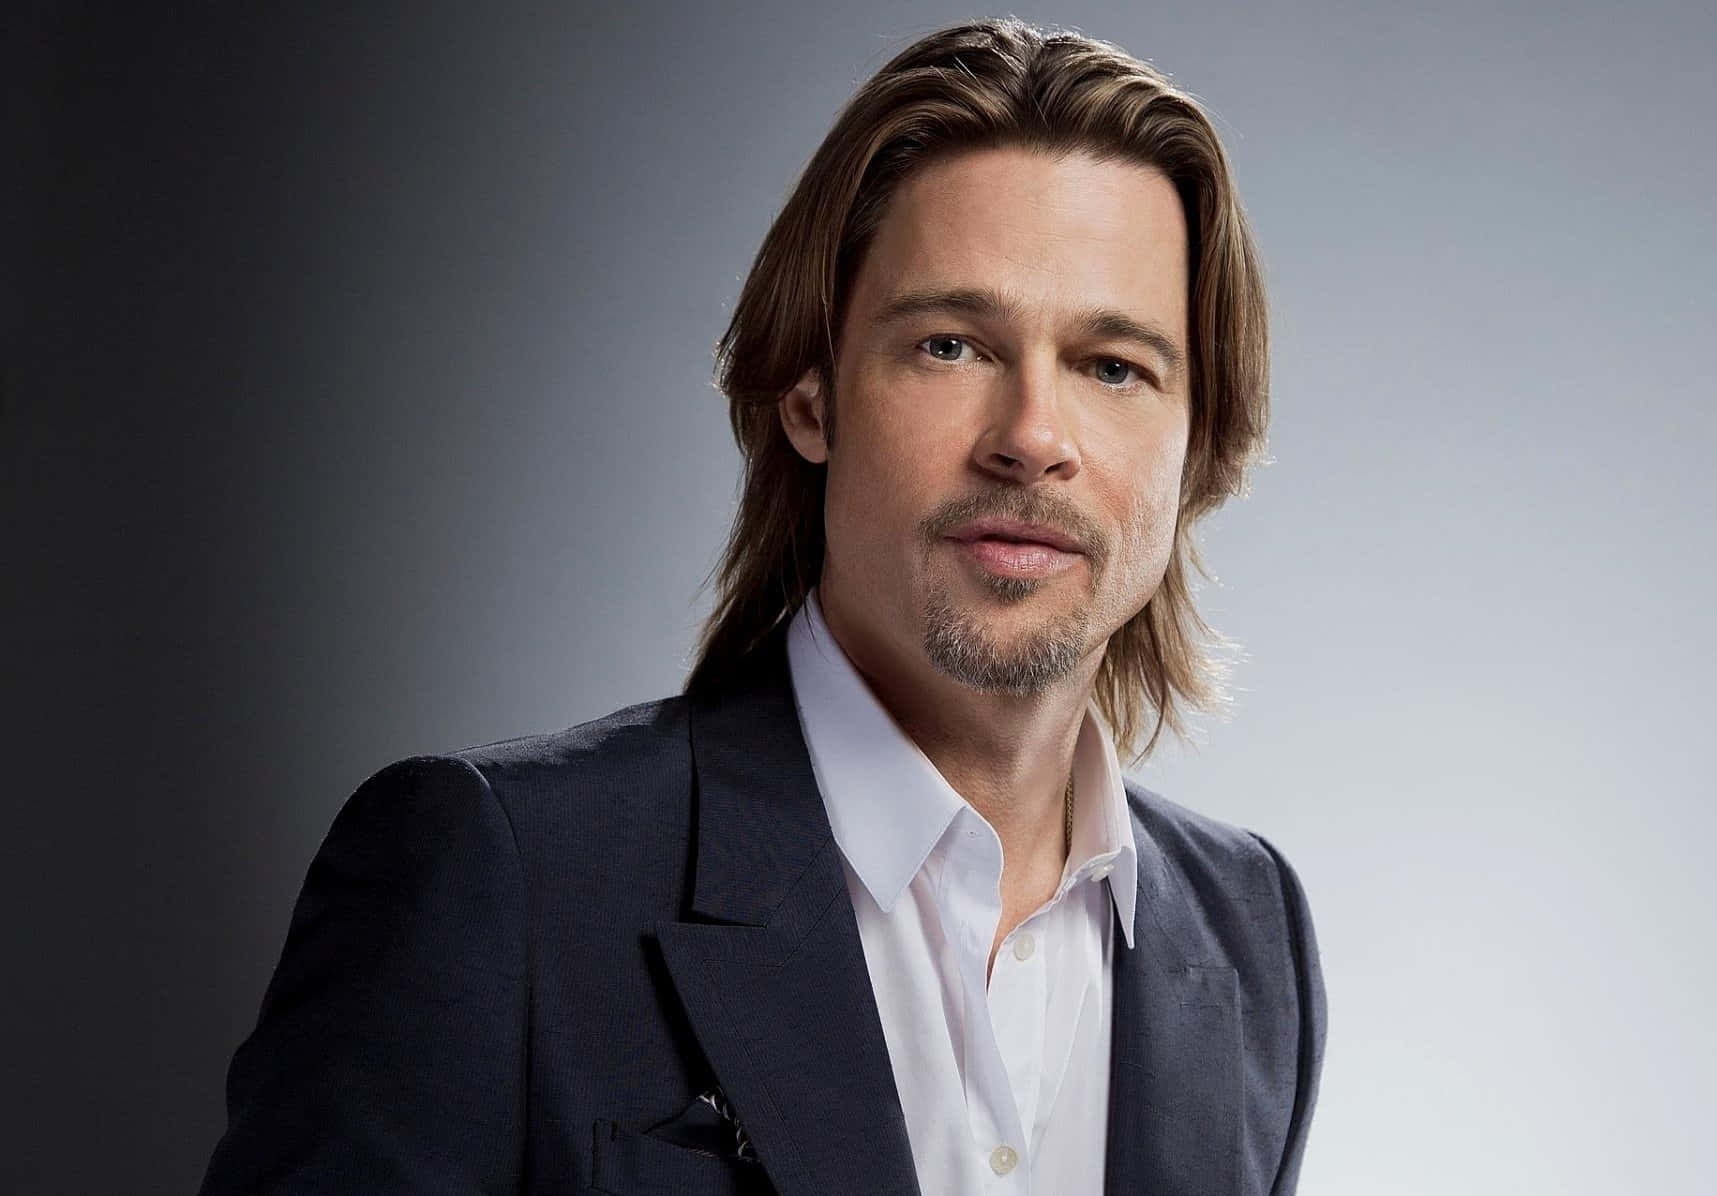 Brad Pitt (Actor)